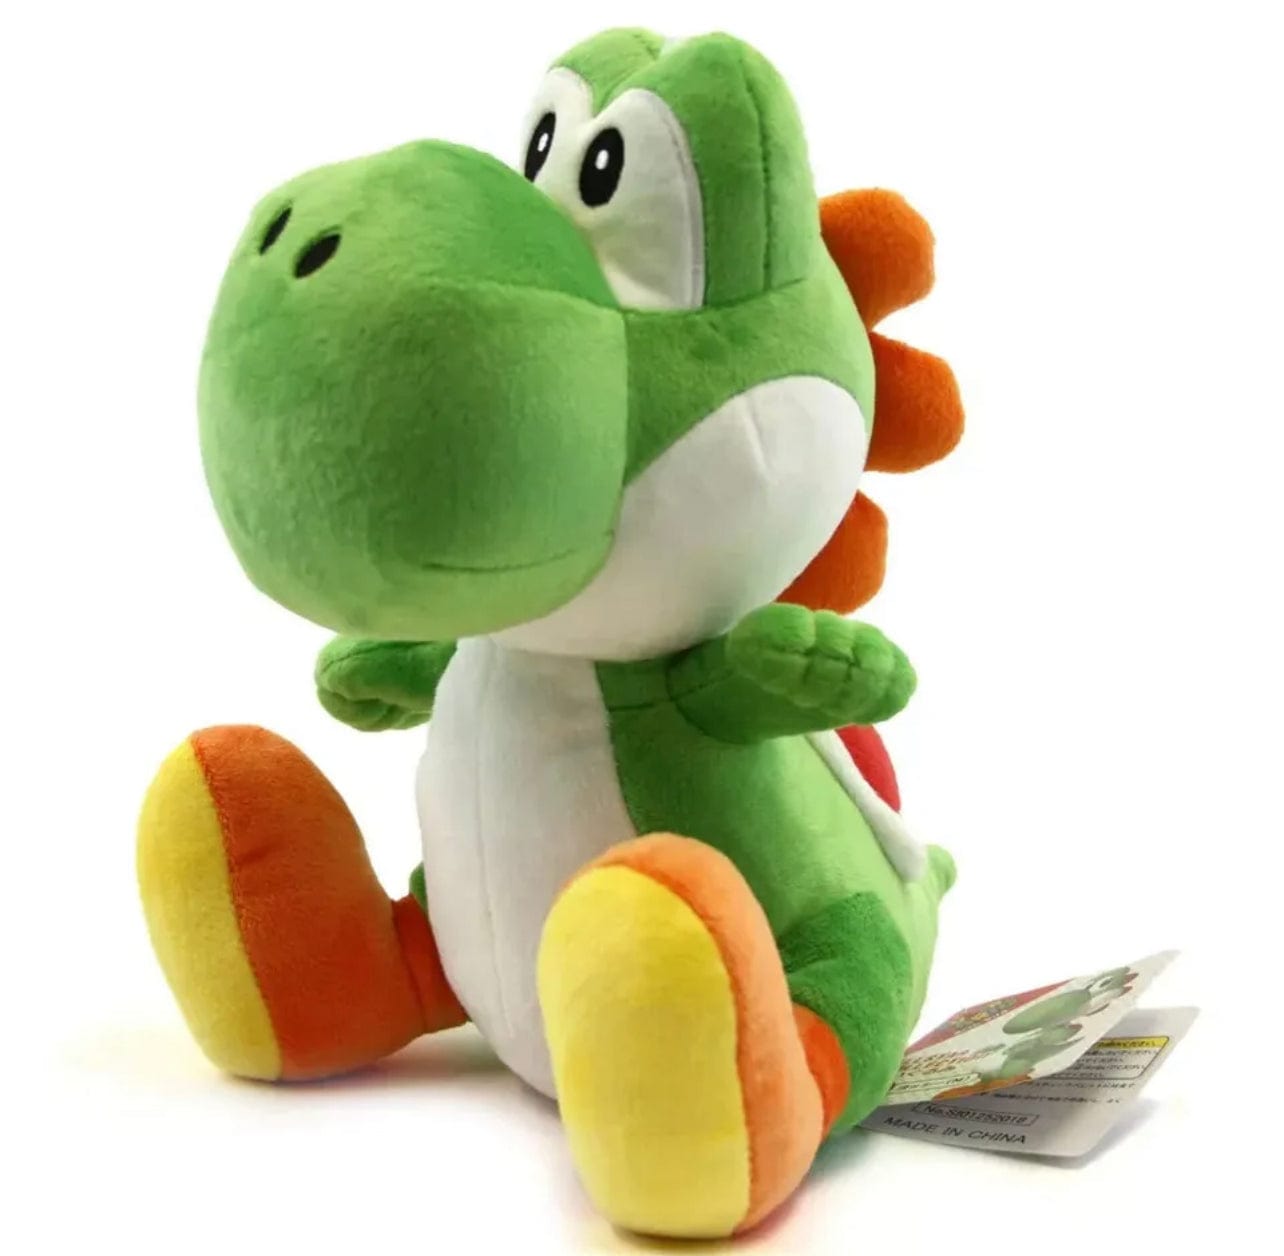 Little Buddy Super Mario All Star Yoshi - Green Yoshi (Medium) Plush 10”